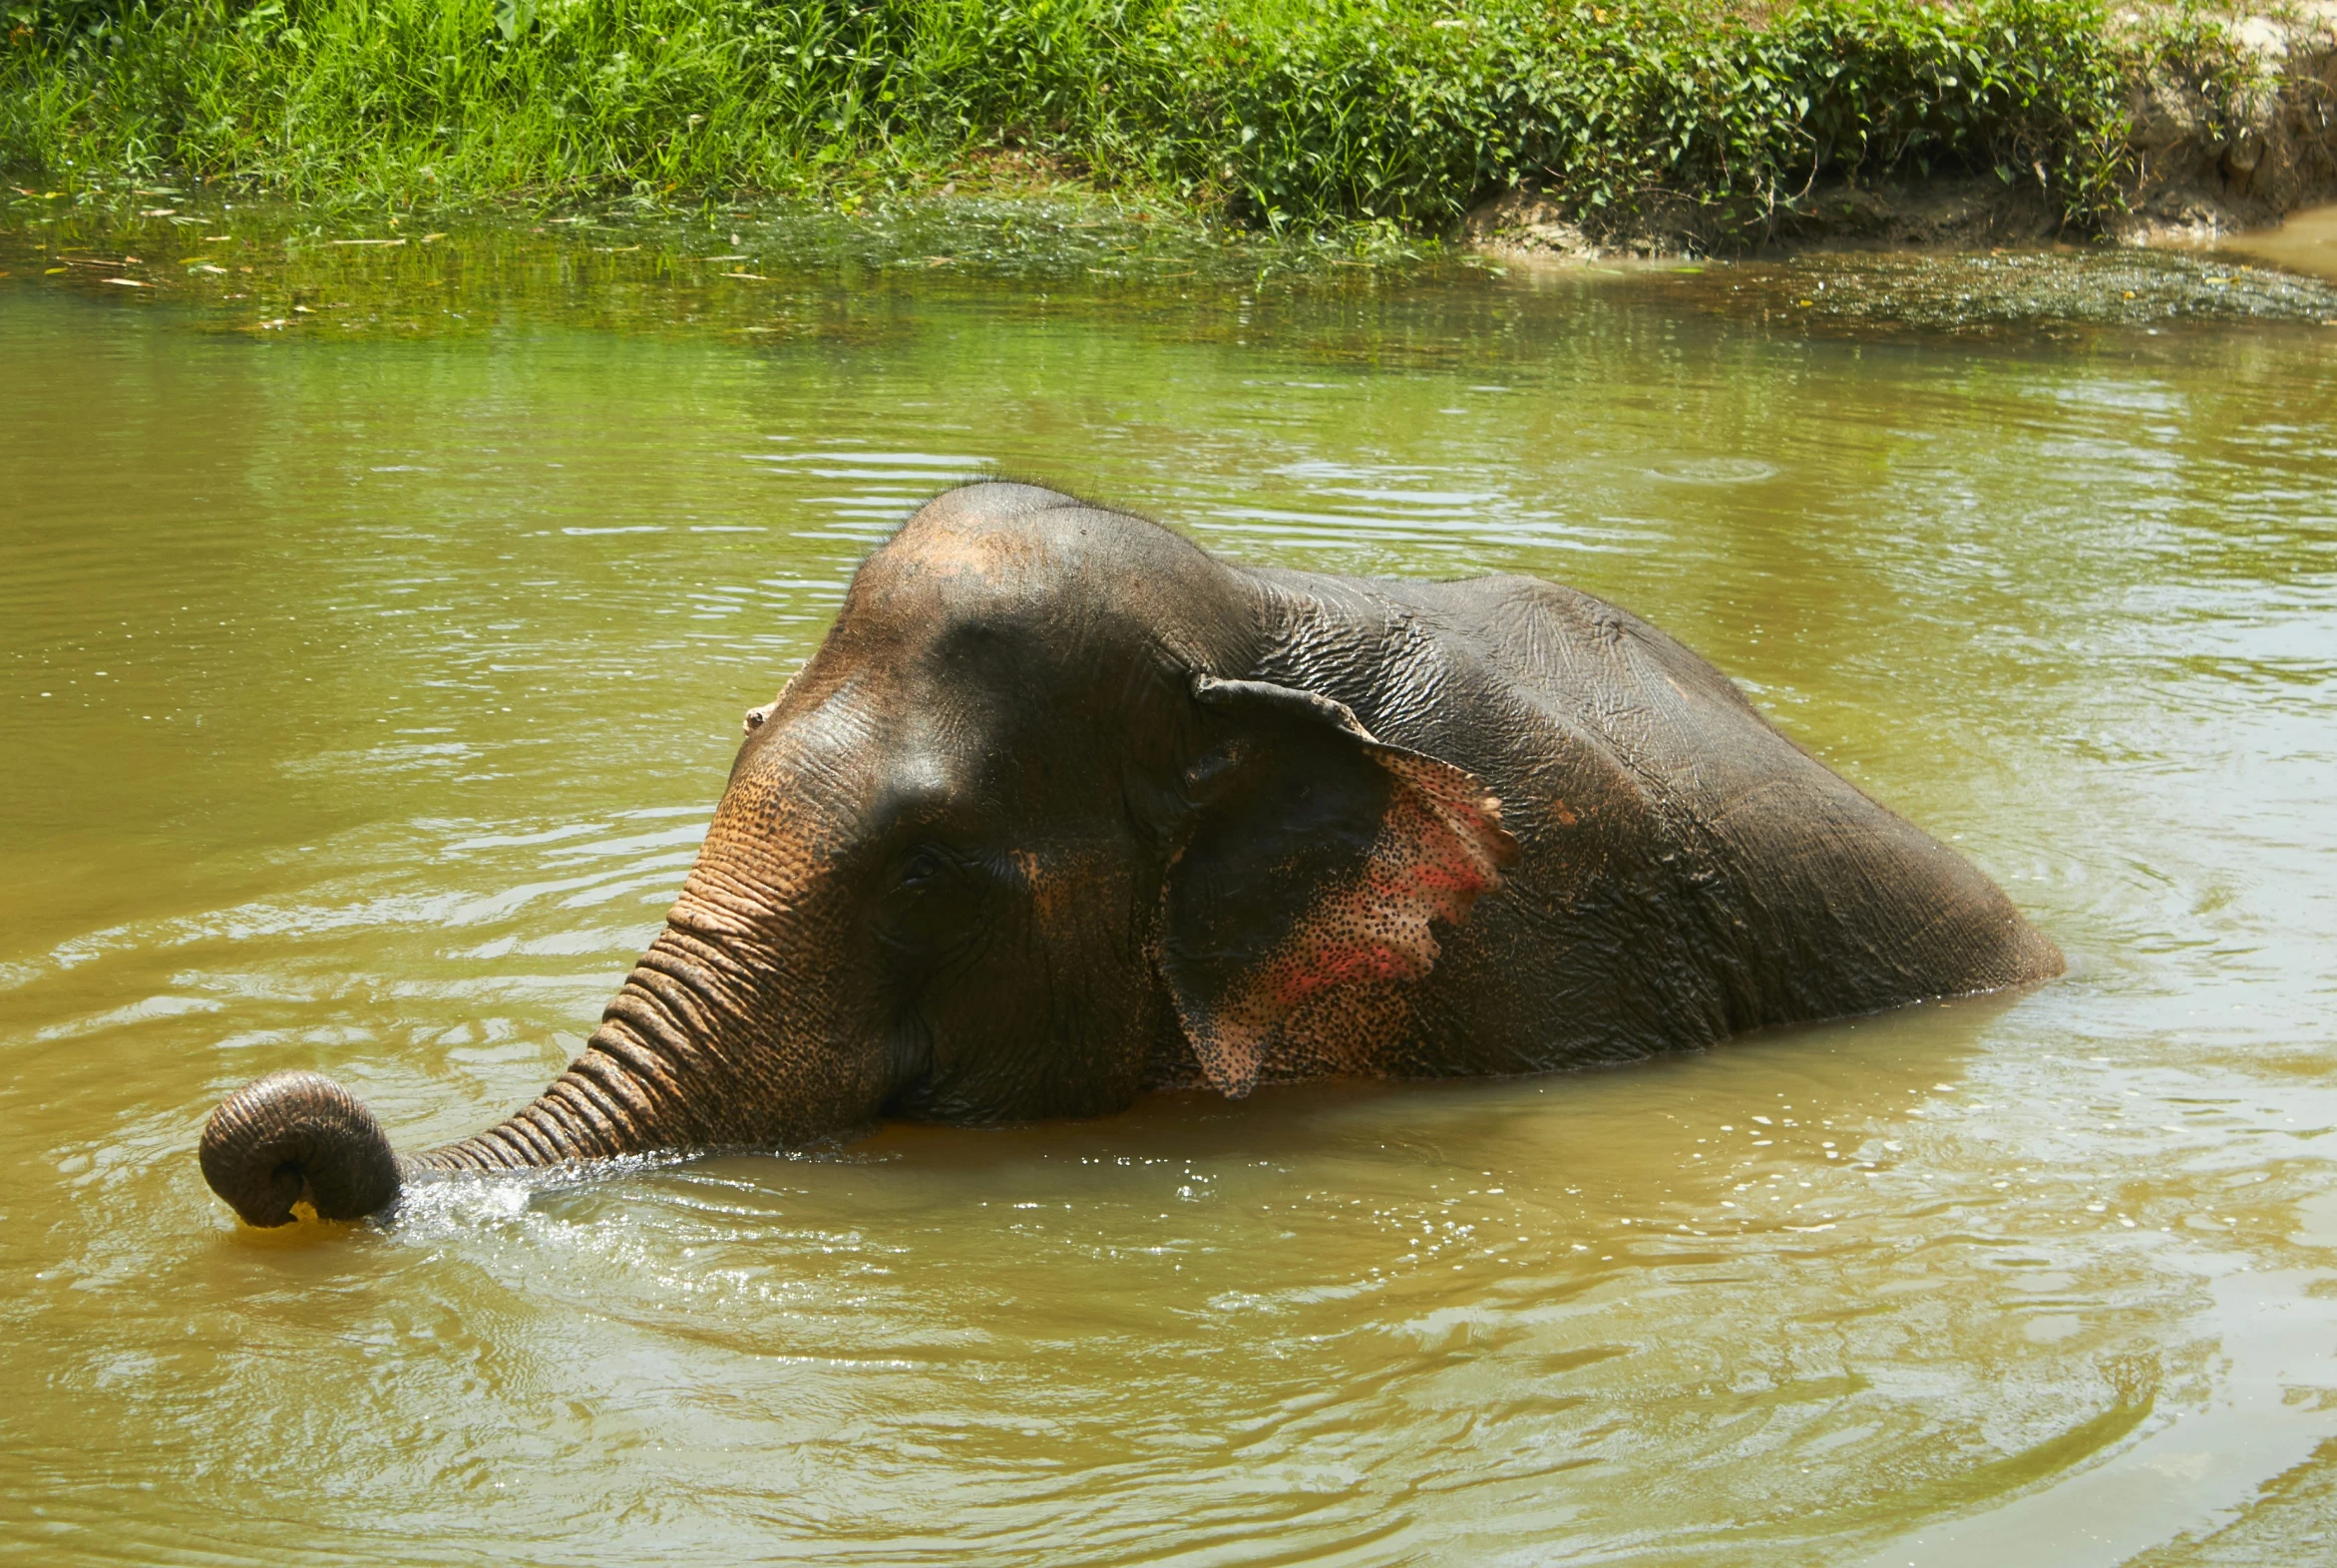 an elephant bathing in a body of water